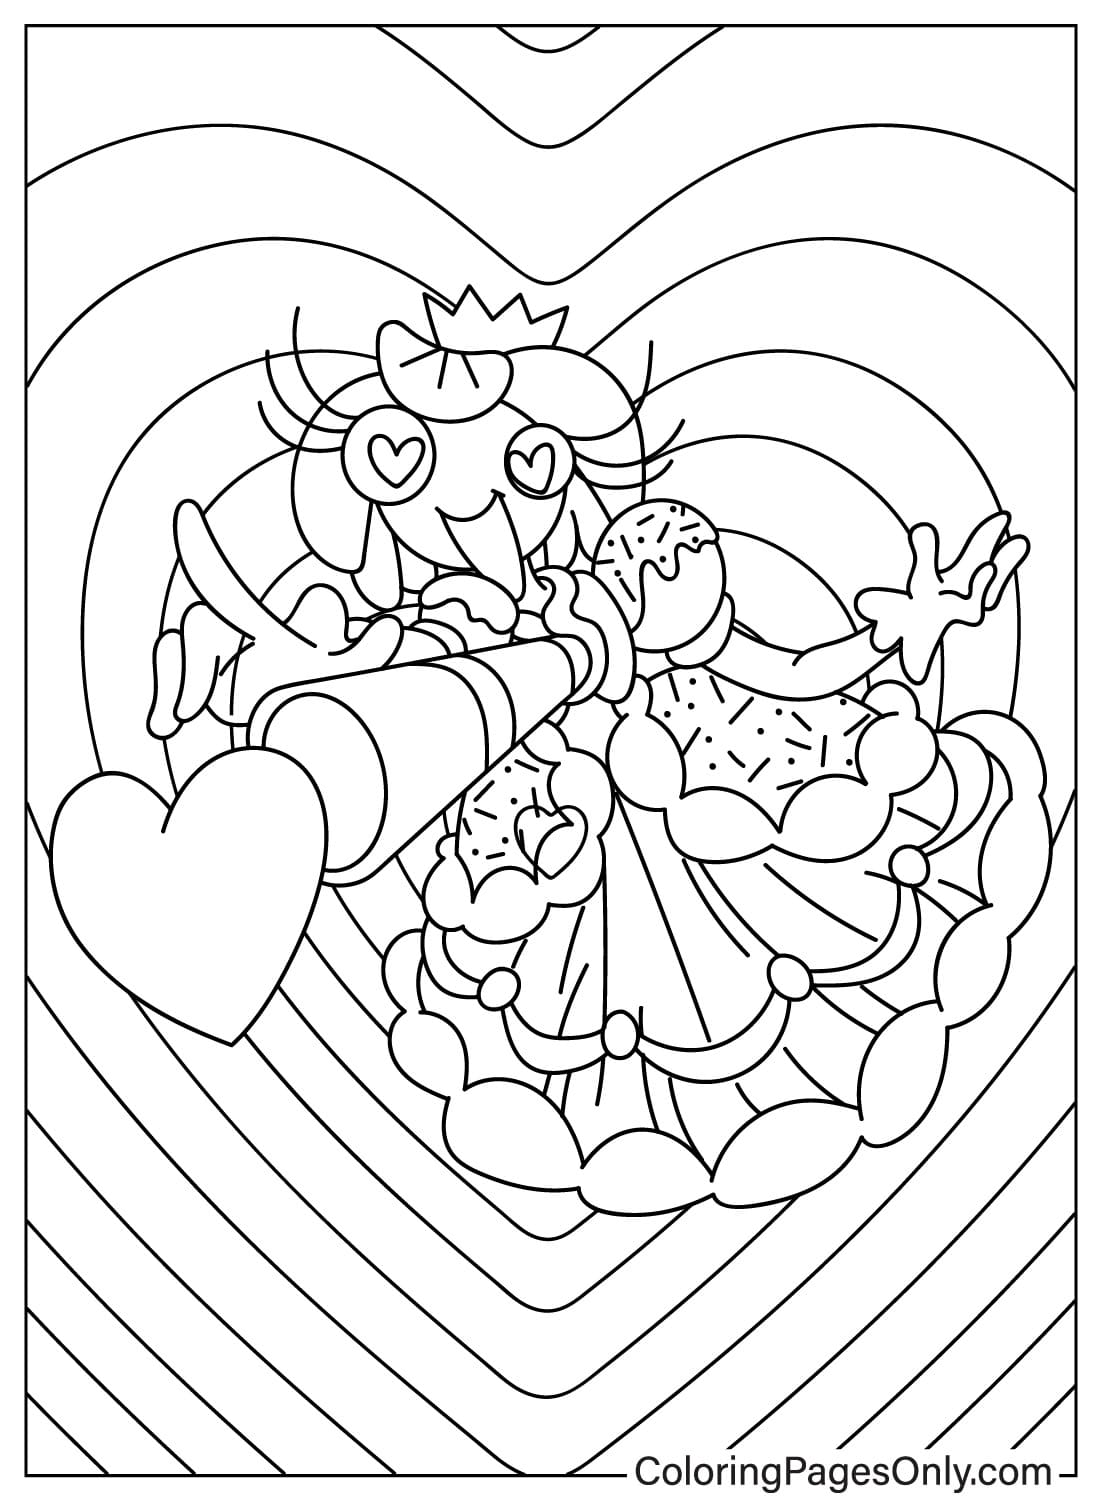 Página para colorear de la princesa Loolilalu con corazón de la princesa Loolilalu